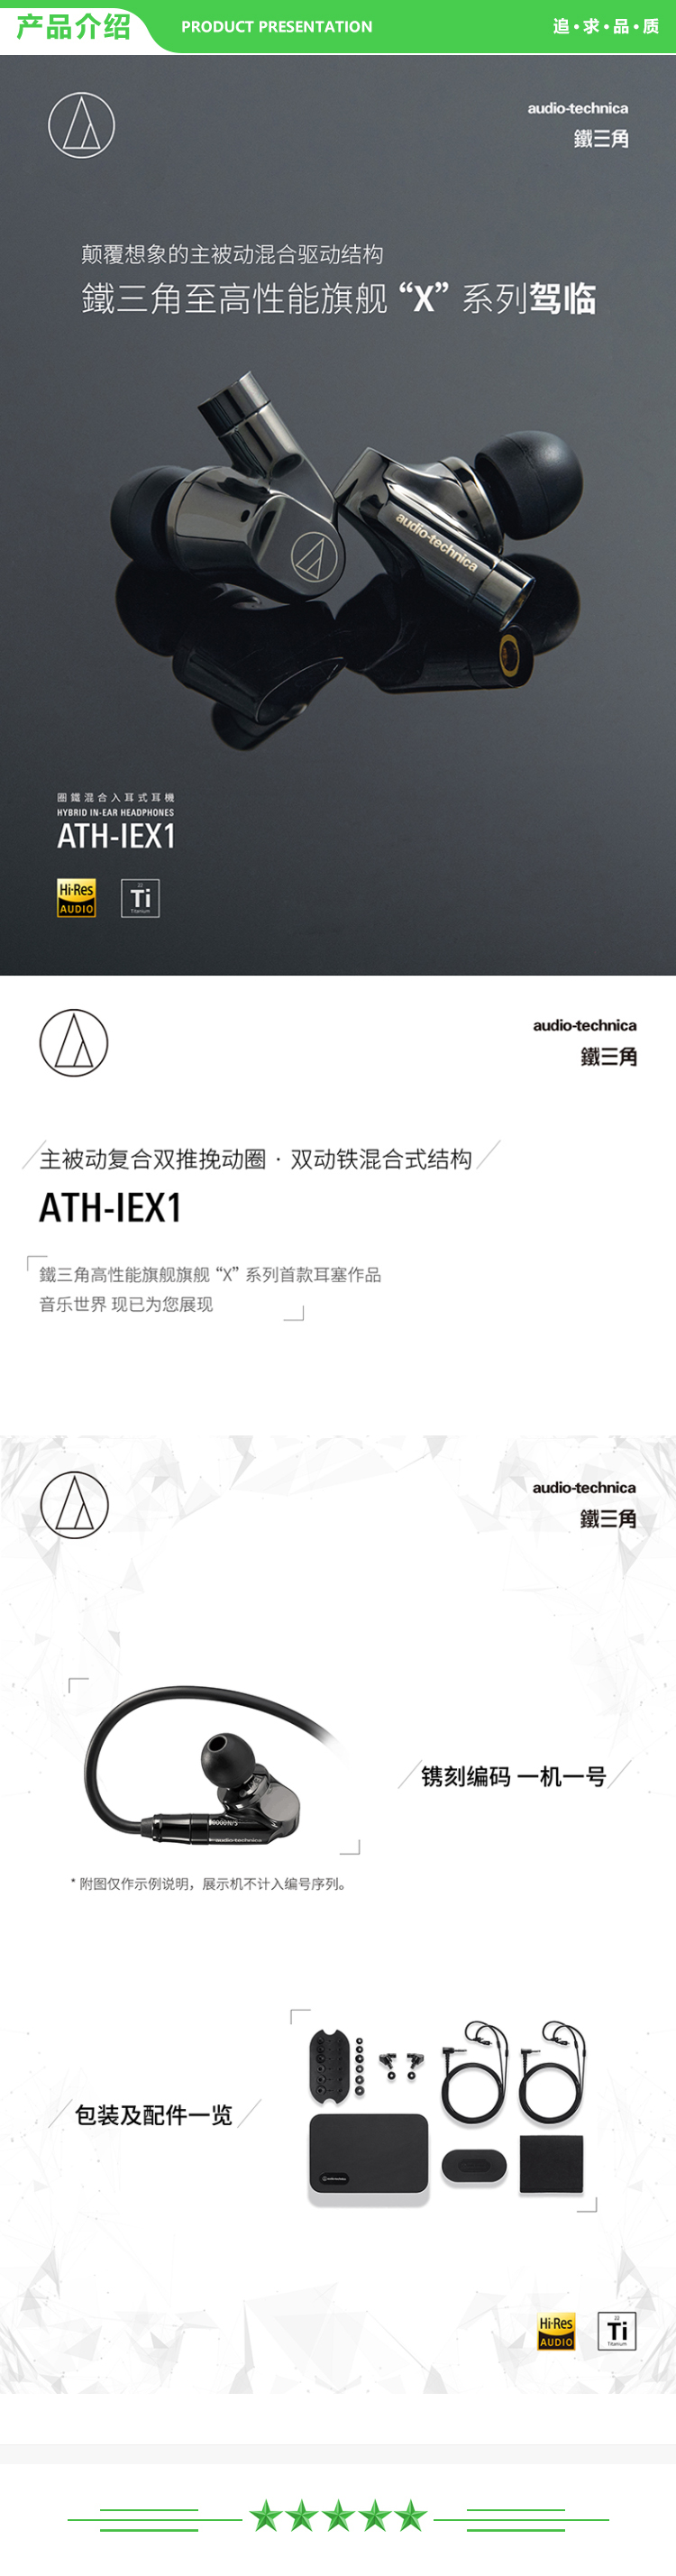 铁三角 Audio-technica ATH-IEX1 旗舰级圈铁混合入耳式耳机 .jpg